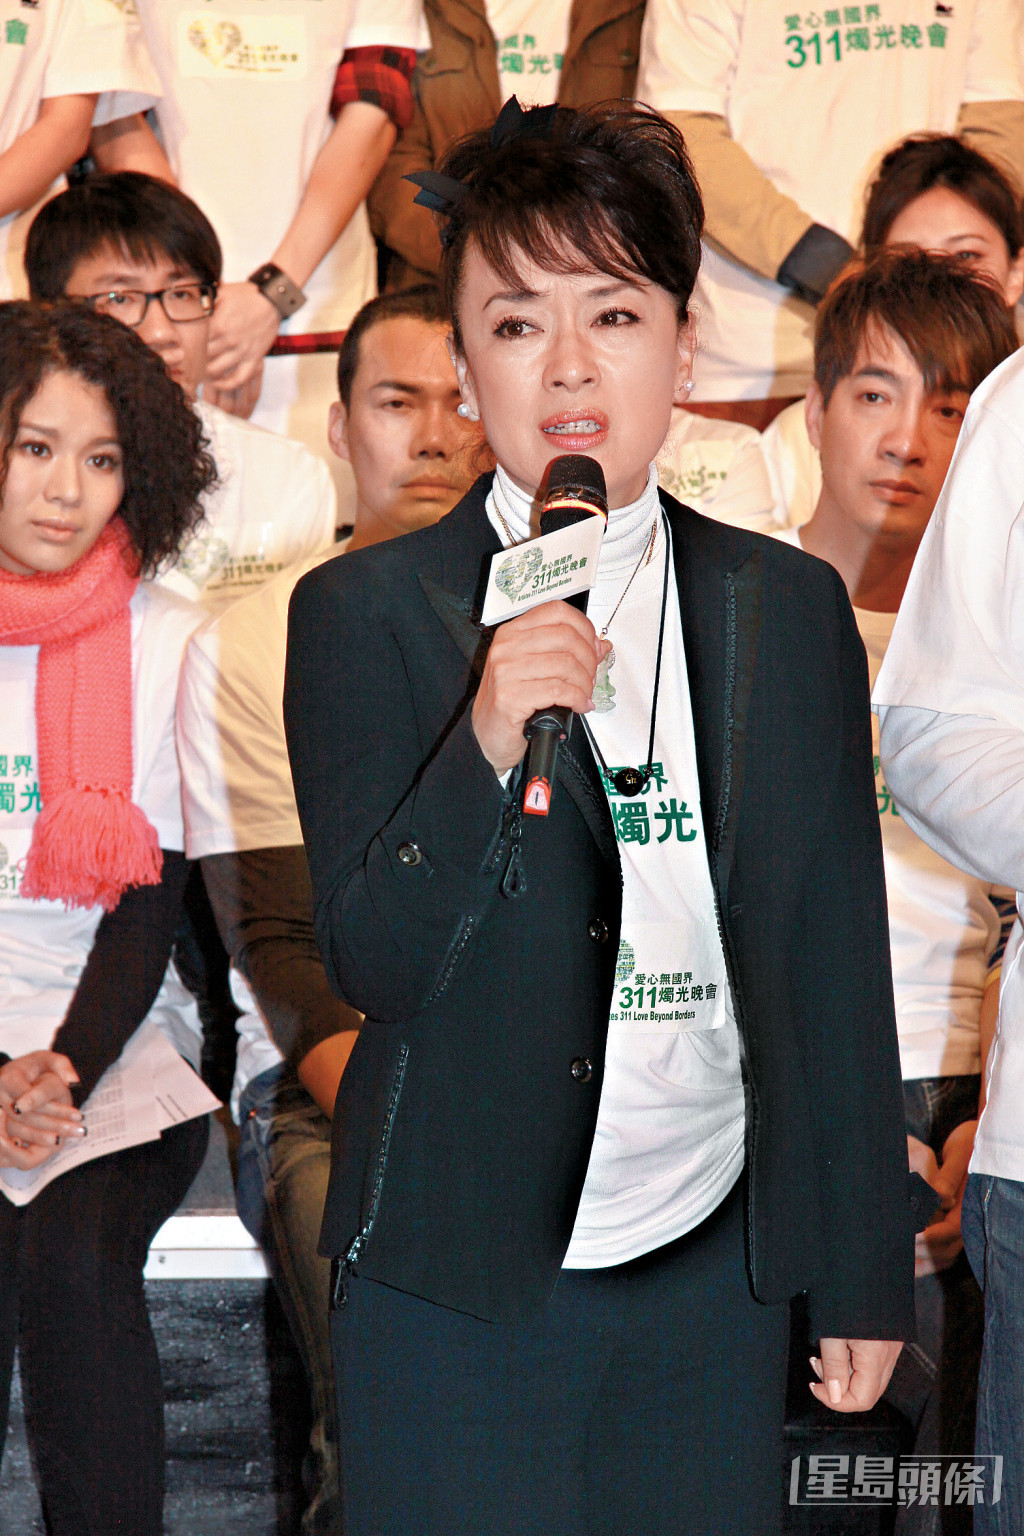 翁倩玉於2011年出席香港演藝界藝人在維園舉行為日本賑災的《愛心無國界311燭光晚會》。